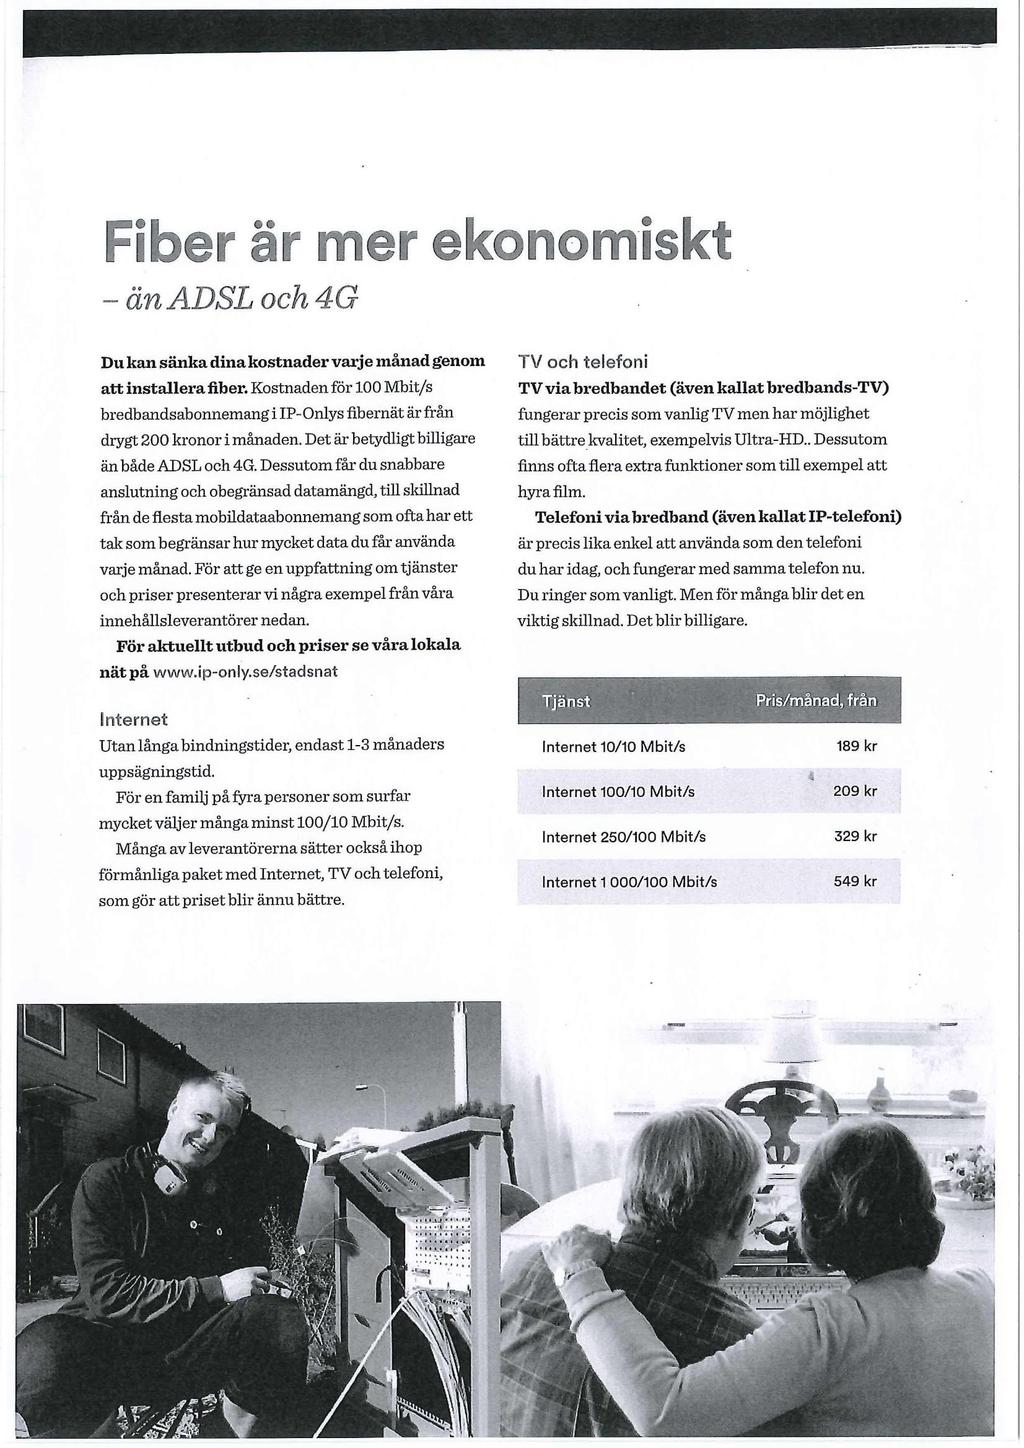 163' - än ADSL och 4G Du kan sänka dina kostnader varje månad genom att installera fiber. Kostnaden för 100 Mbit/s bredbandsabonnemang i IP-Onlys fibernät är från drygt 200 kronor i månaden.